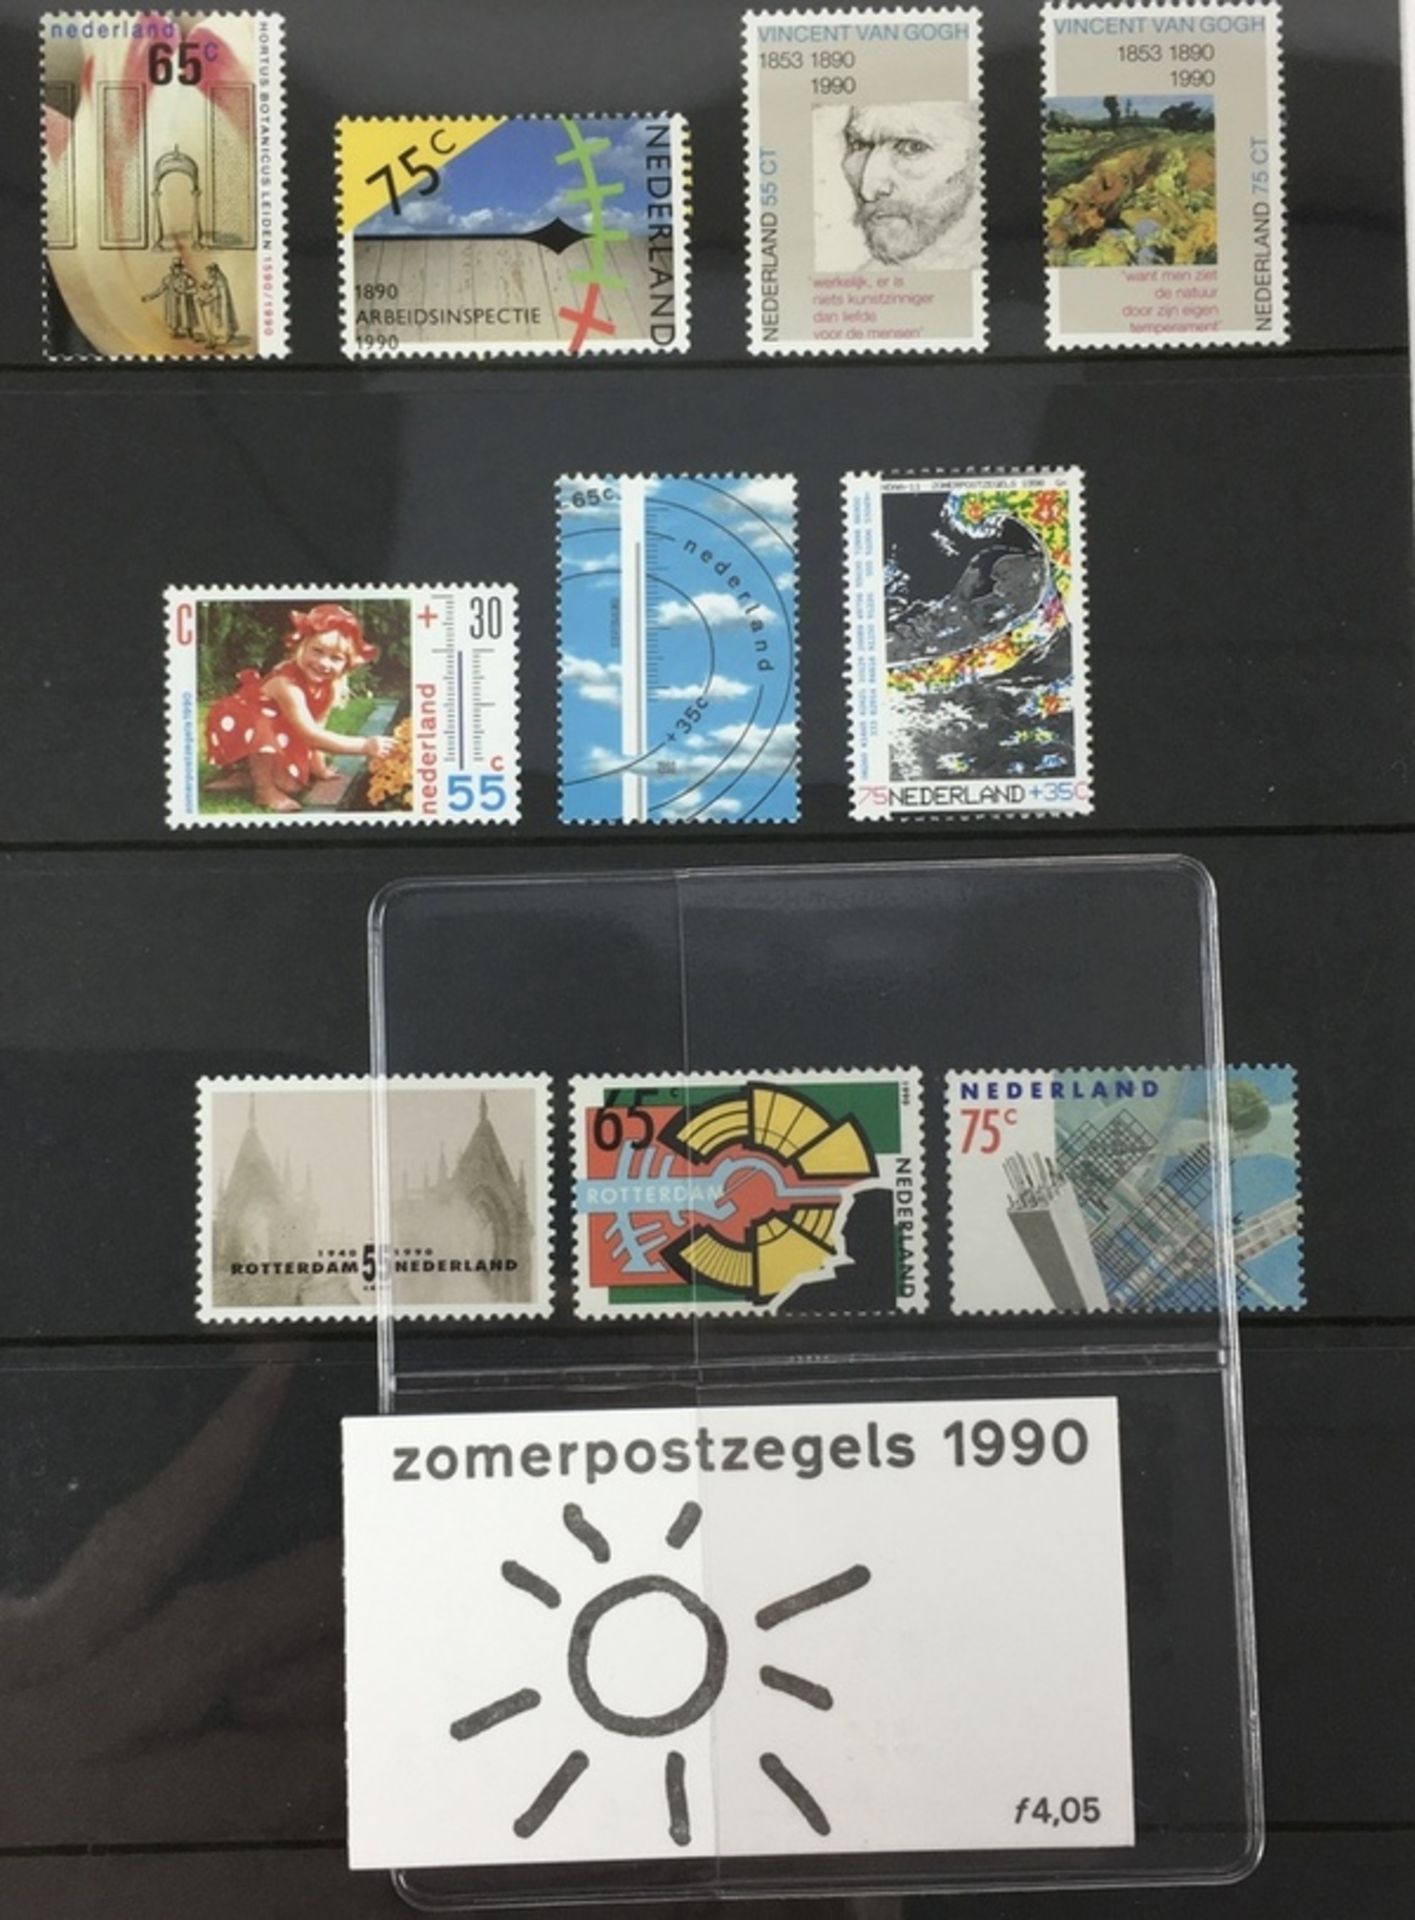 (Filatelie) Jaarcollecties postzegelsJaarcollecties postzegels uit 1998, 1992 (3x), 1991 (2x), - Bild 2 aus 4